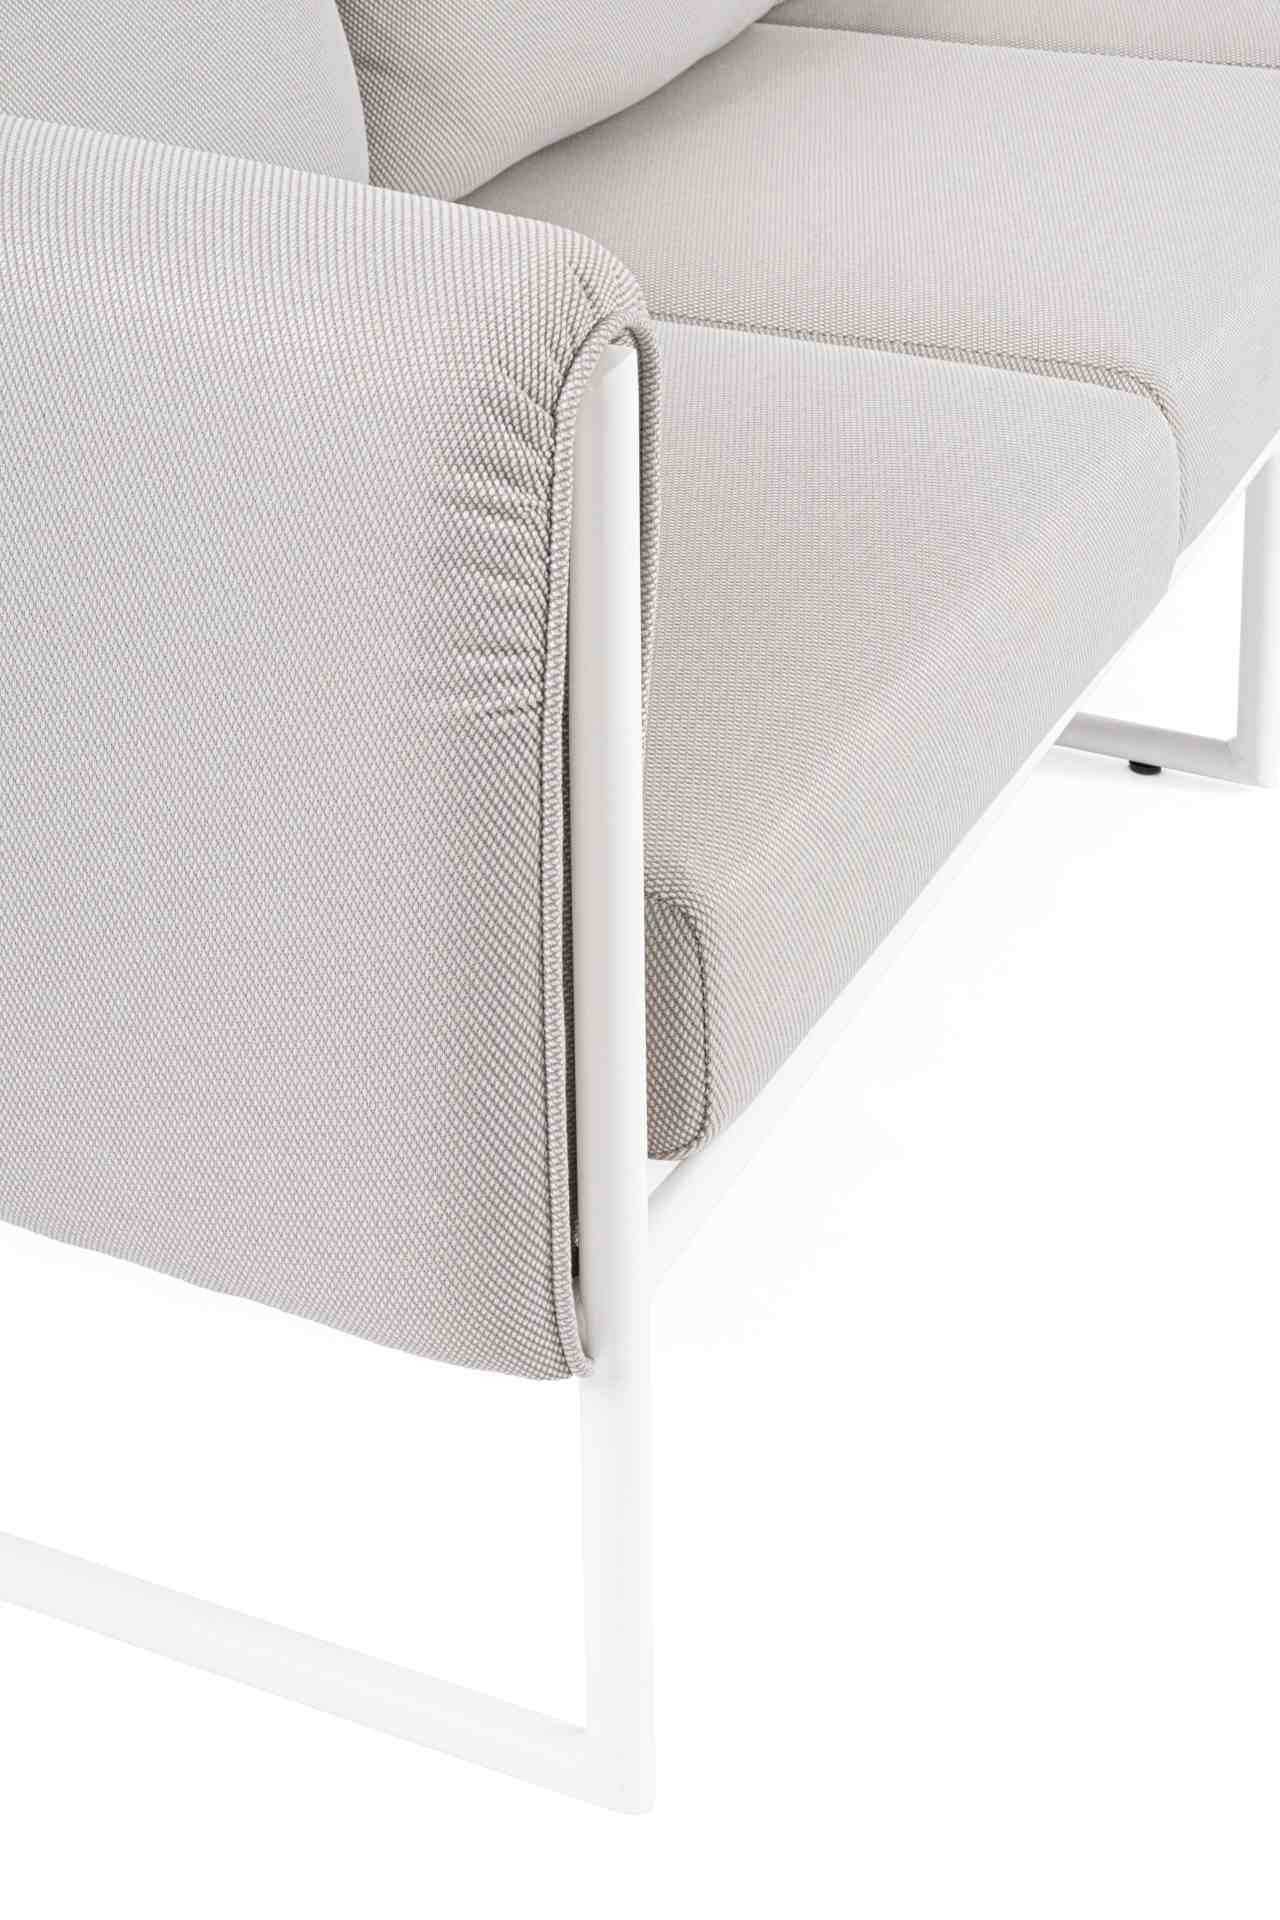 Das Gartensofa Pixel überzeugt mit seinem modernen Design. Gefertigt wurde es aus Olefin-Stoff, welcher einen grauen Farbton besitzt. Das Gestell ist aus Aluminium und hat eine weiße Farbe. Das Sofa verfügt über eine Sitzhöhe von 42 cm und ist für den Out